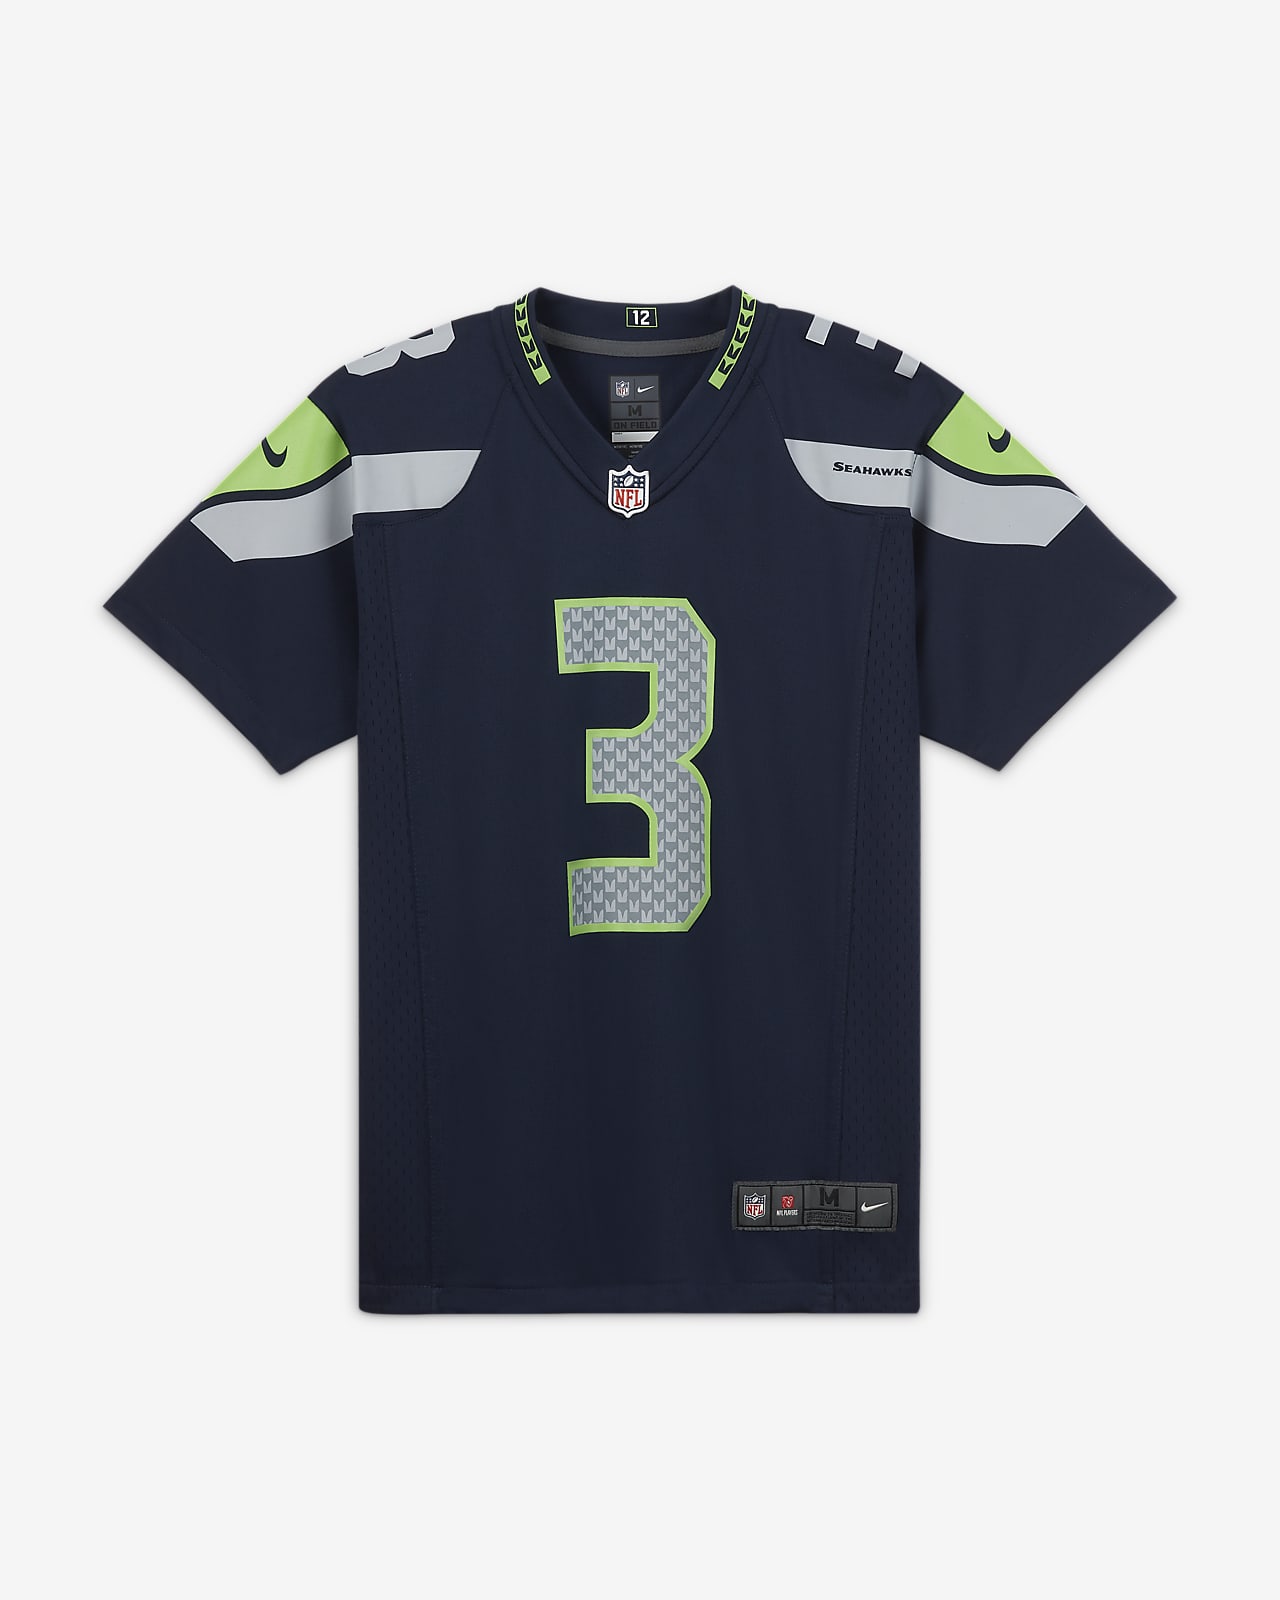 Zápasový dres NFL Seattle Seahawks (Russell Wilson) na americký fotbal pro větší děti 